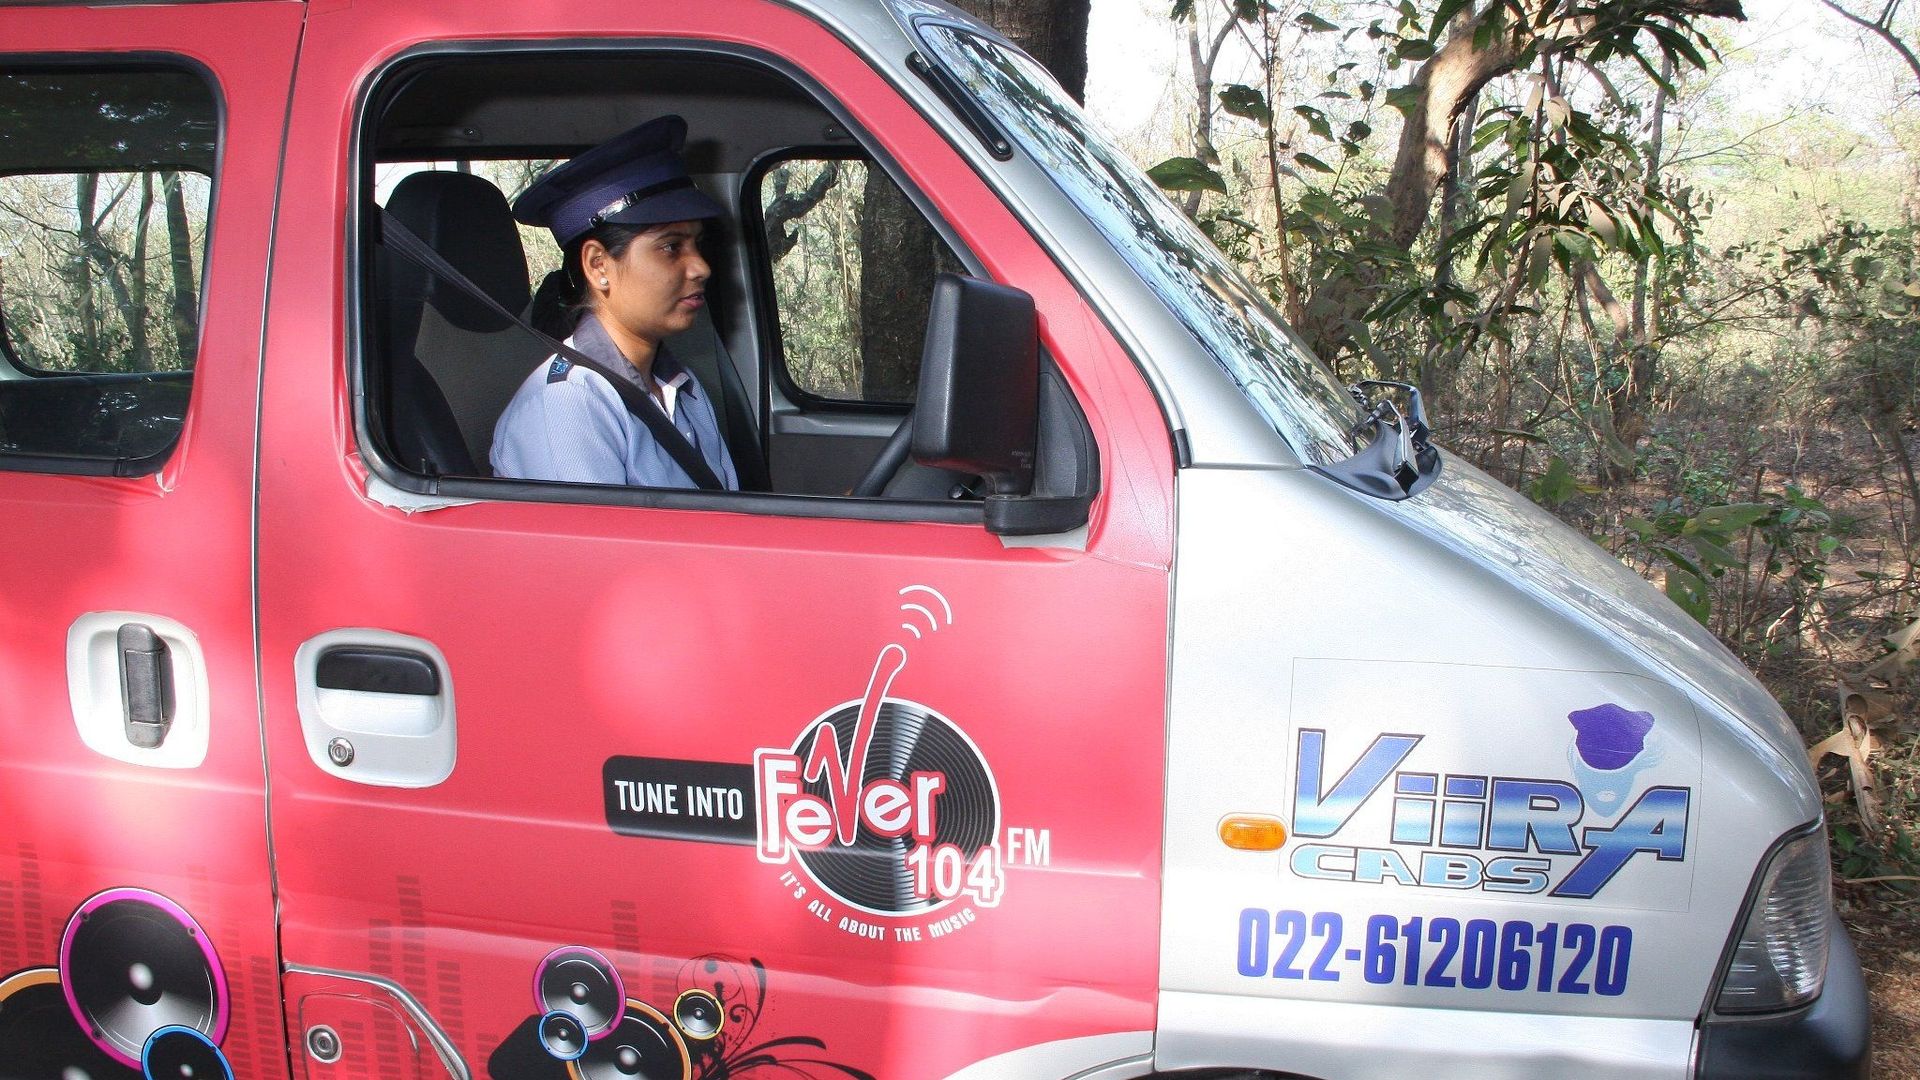 Viira Cabs, société de taxis pour femmes